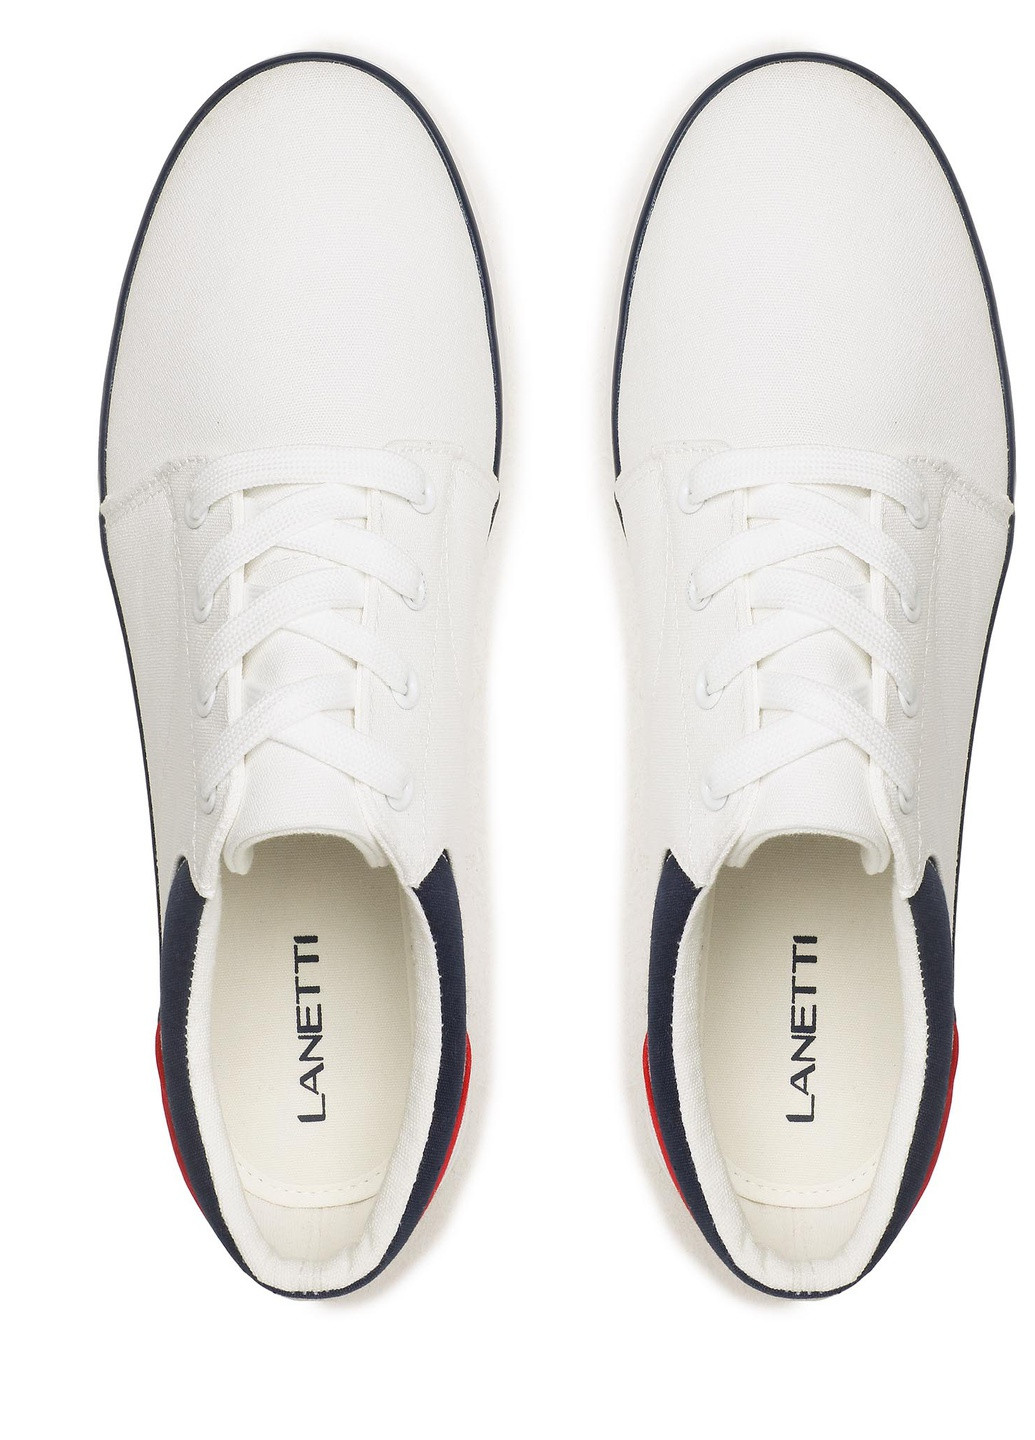 Белые демисезонные кросівки ms20347-11 Lanetti